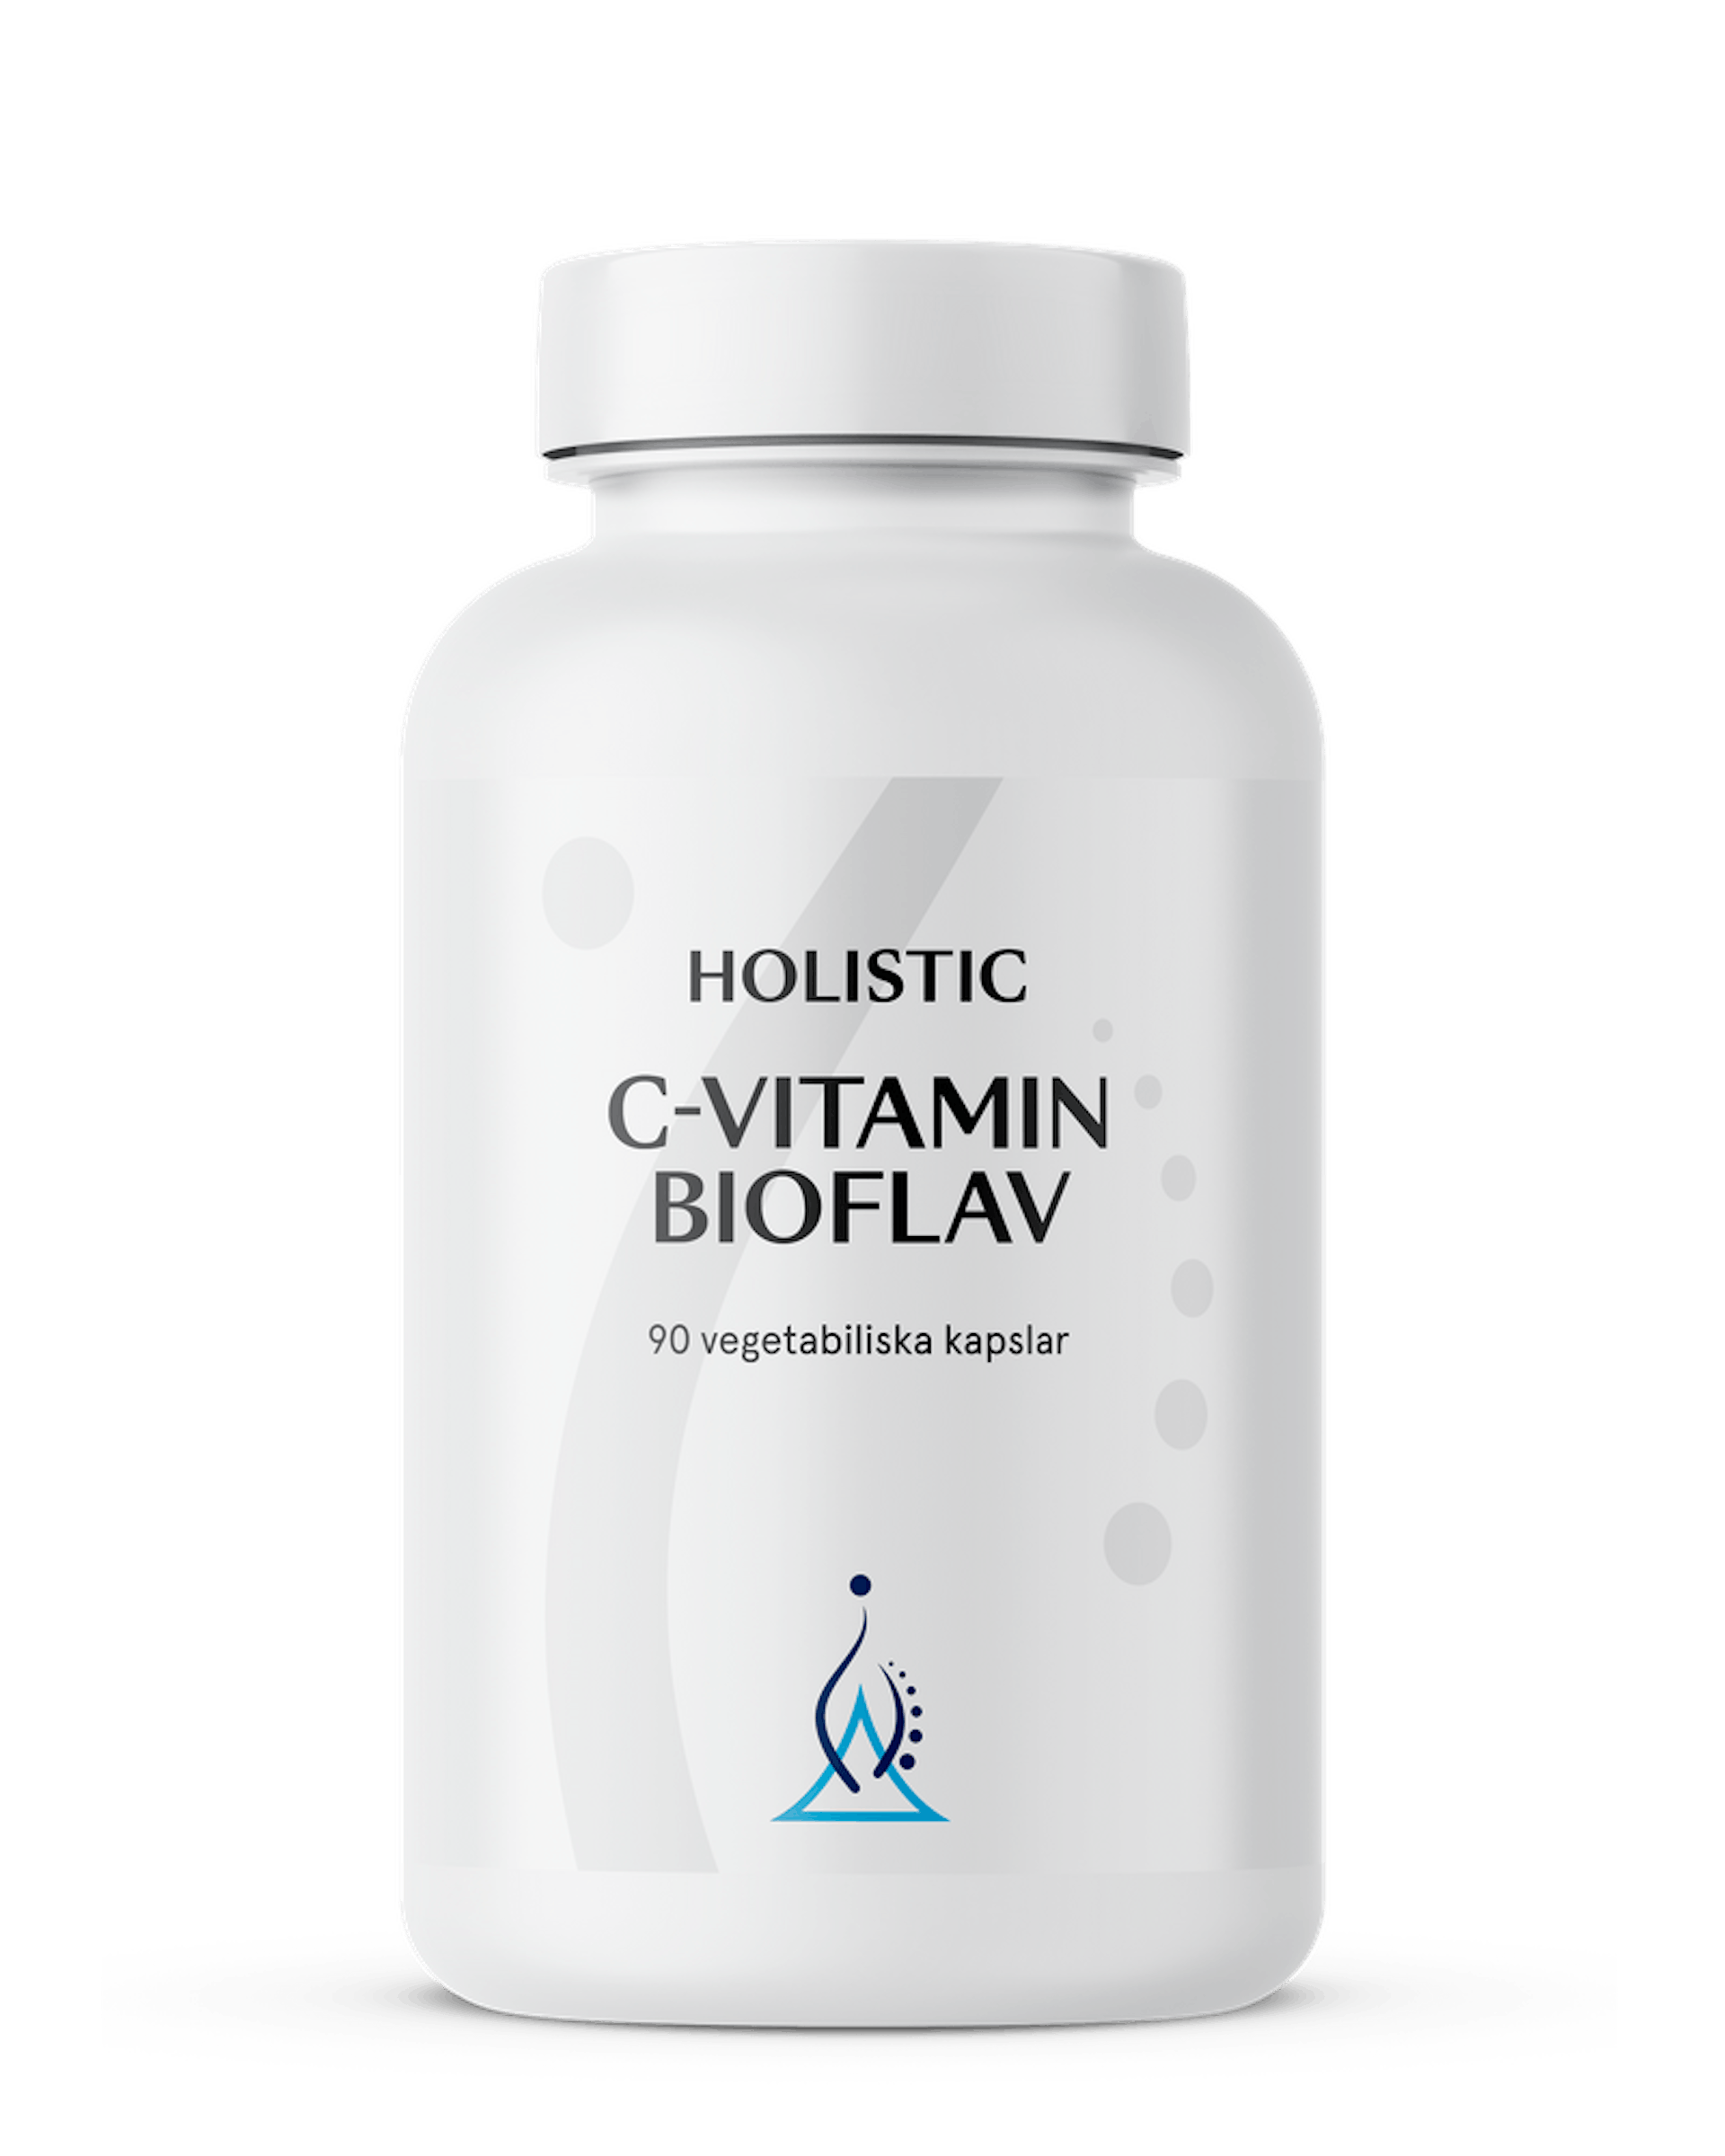 C-vitamin bioflav, 90 kapslar